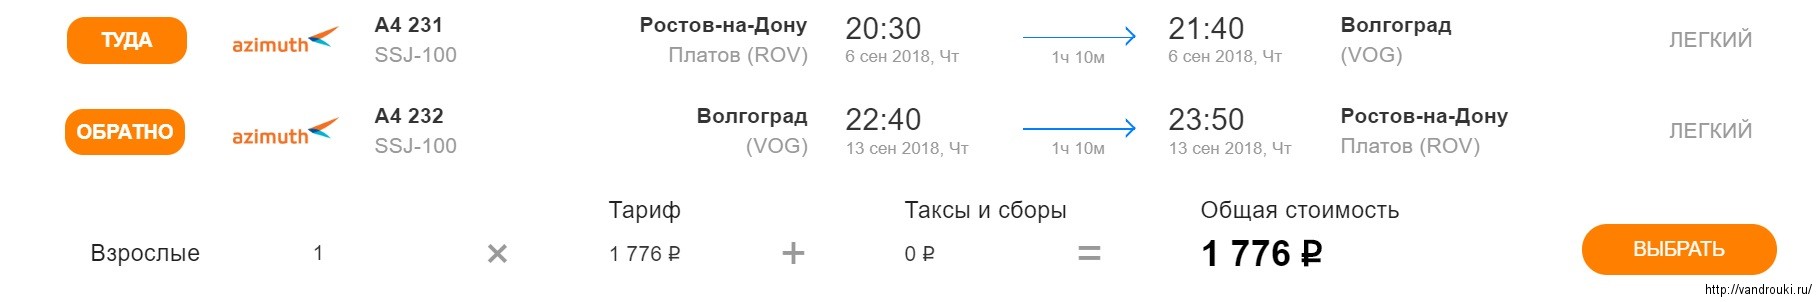 Казань петербург самолетом расписание